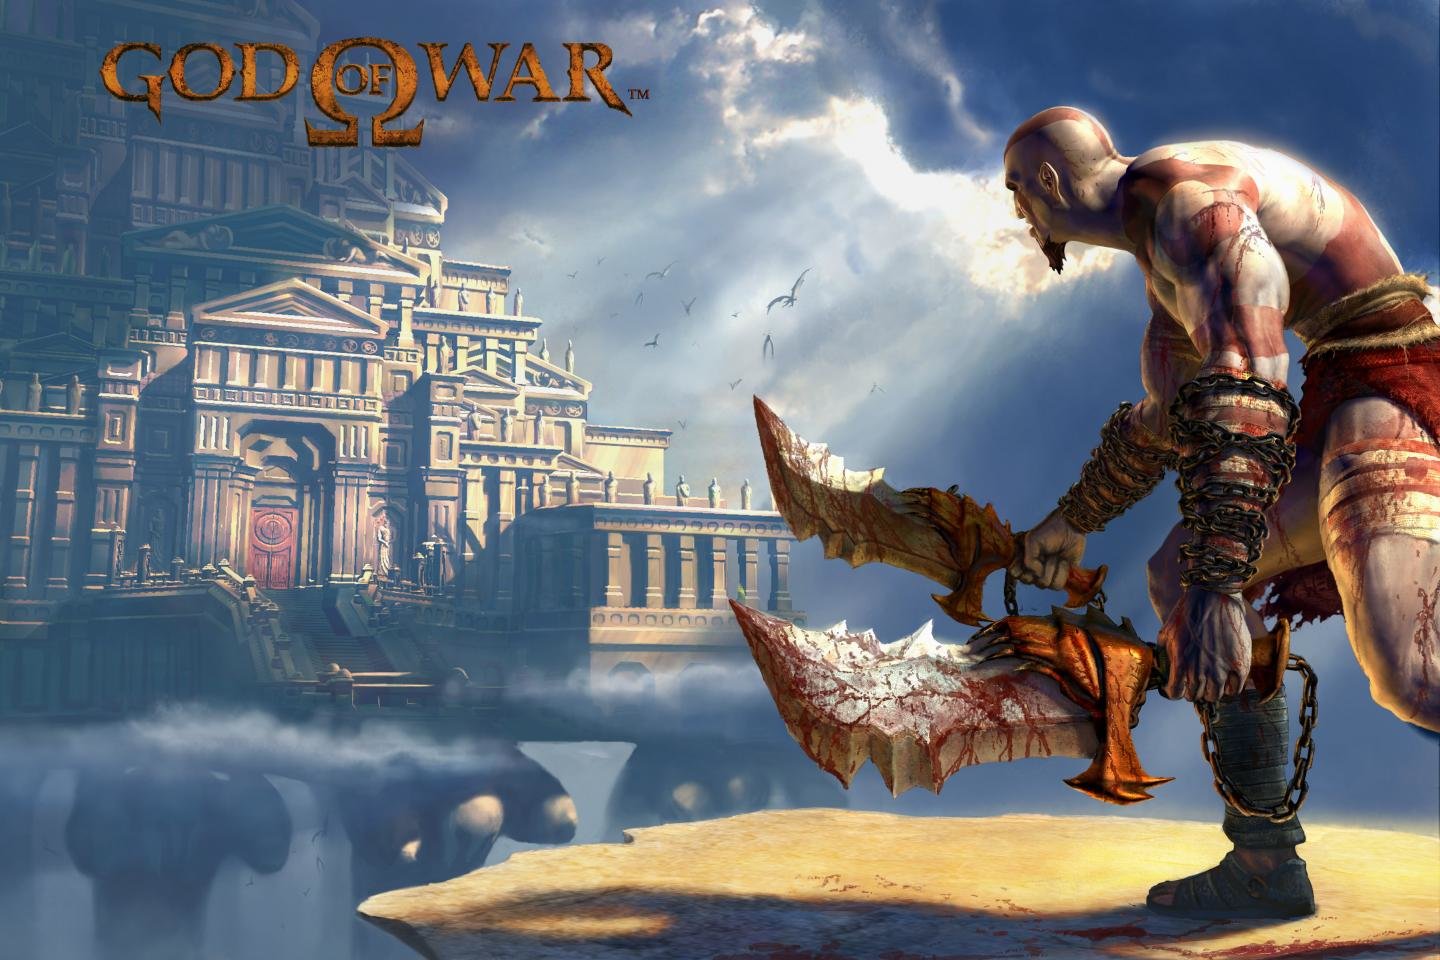 Best Kratos (God Of War) wallpaper ID:319799 for High Resolution hd 1440x960 computer